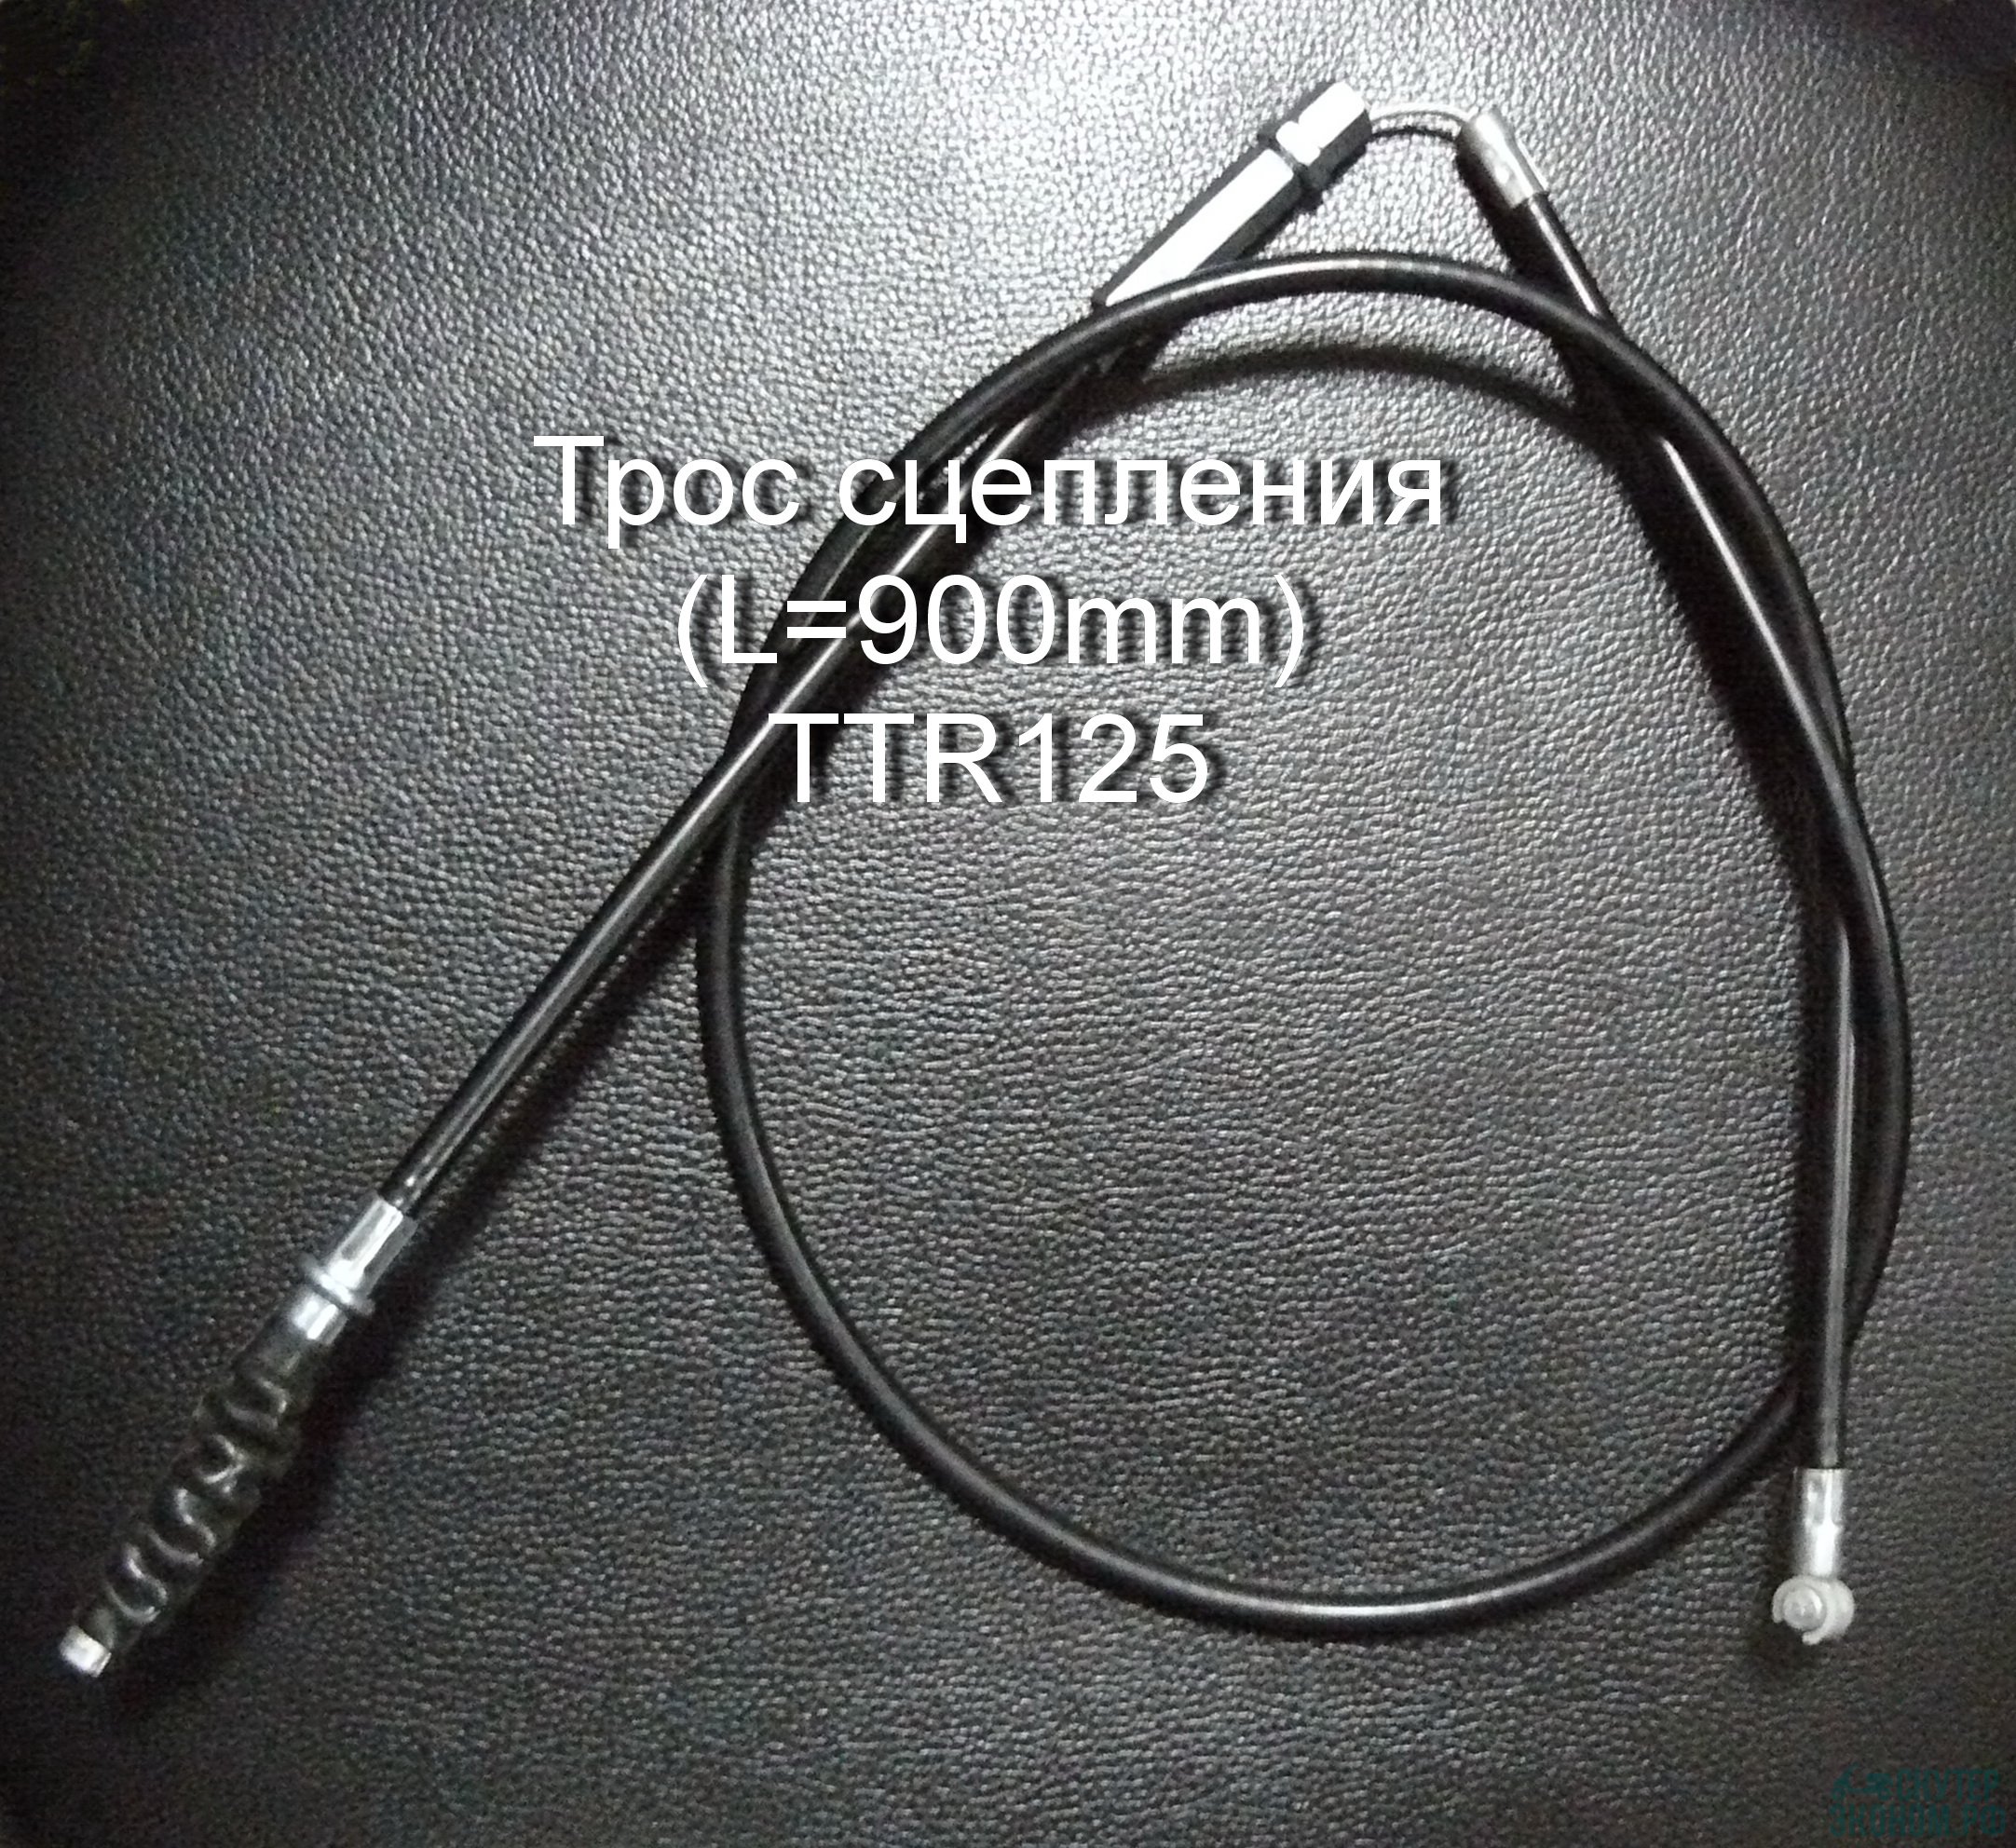 Трос сцепления (L=900mm) TTR125